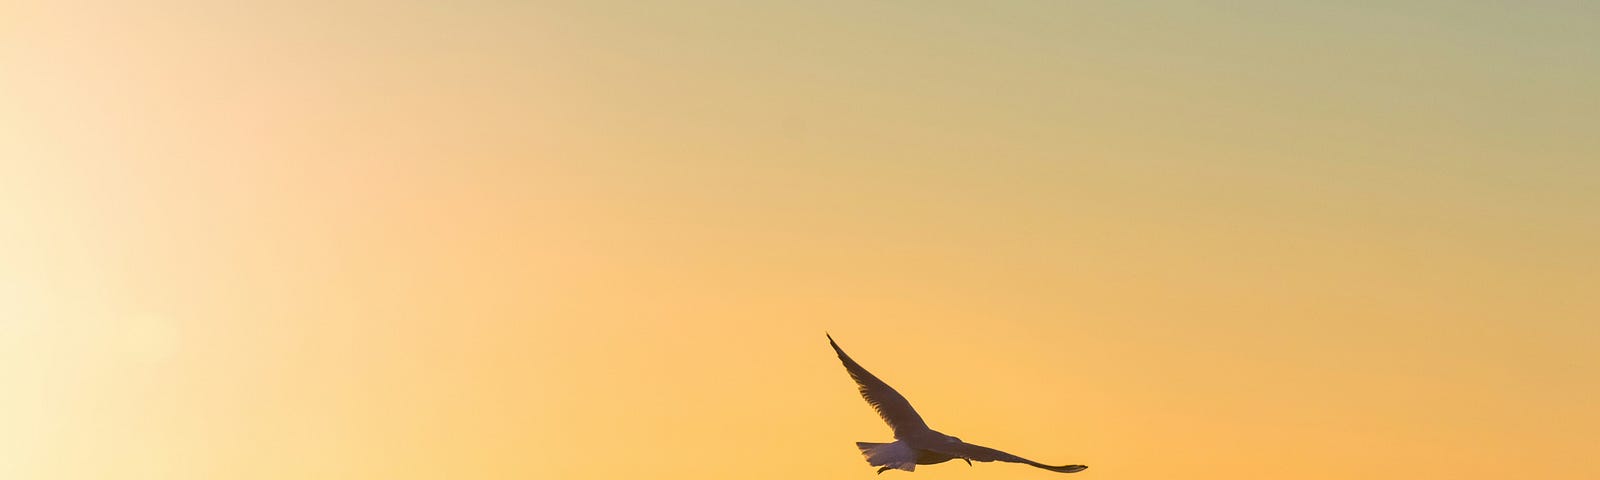 Bird soaring over the ocean